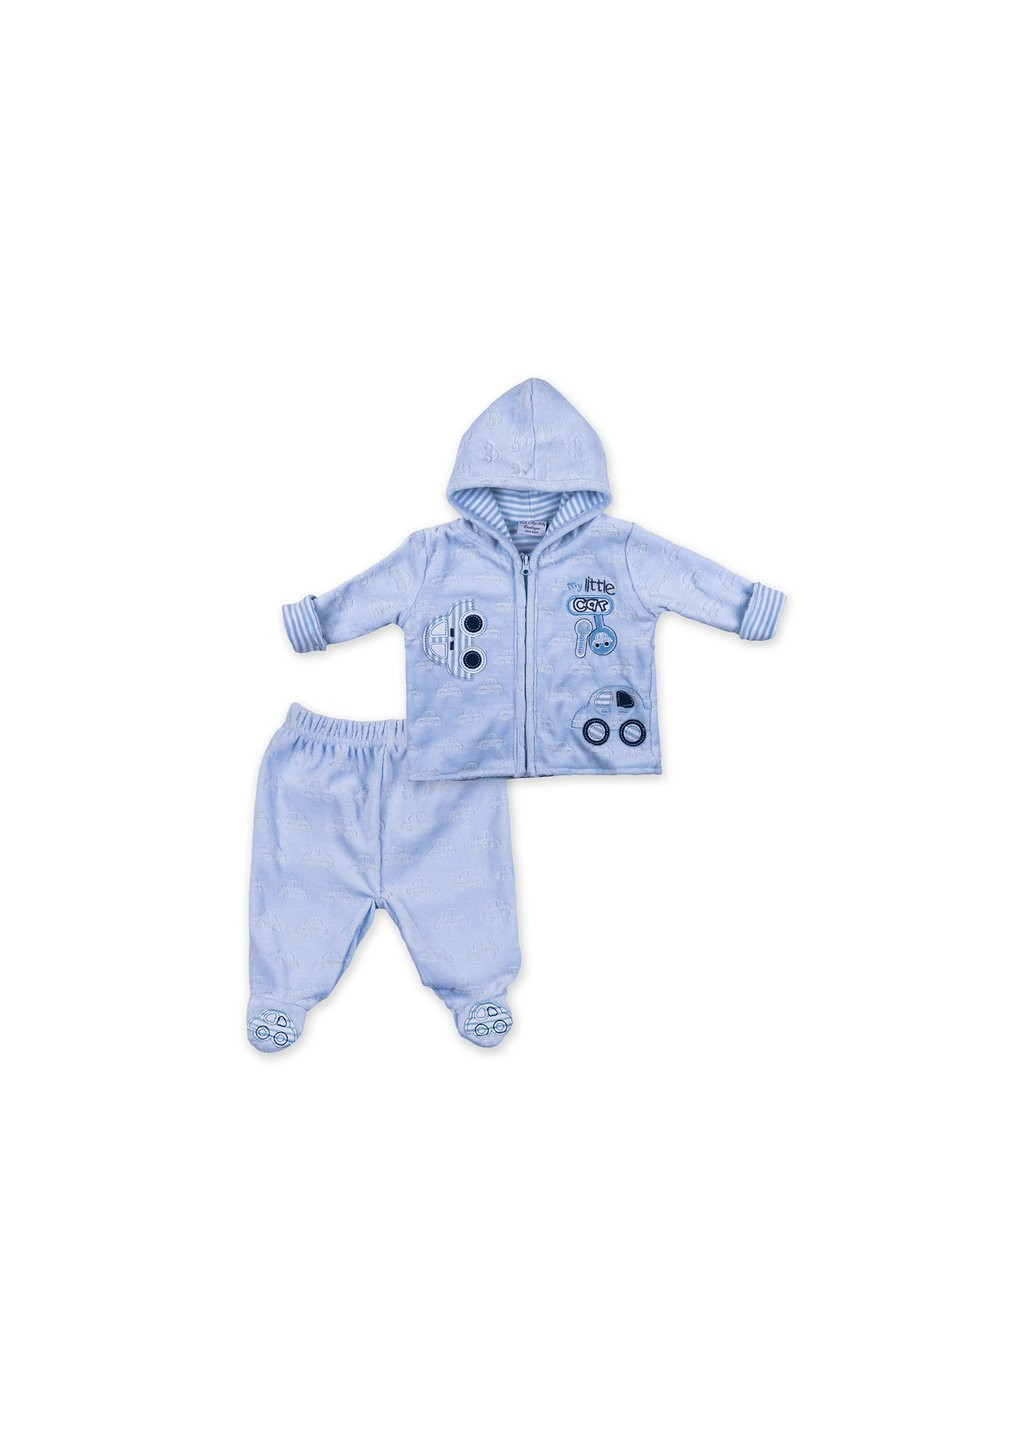 Комбинированный демисезонный набор детской одежды велюровый голубой c капюшоном (ep6206.0-3) Luvena Fortuna